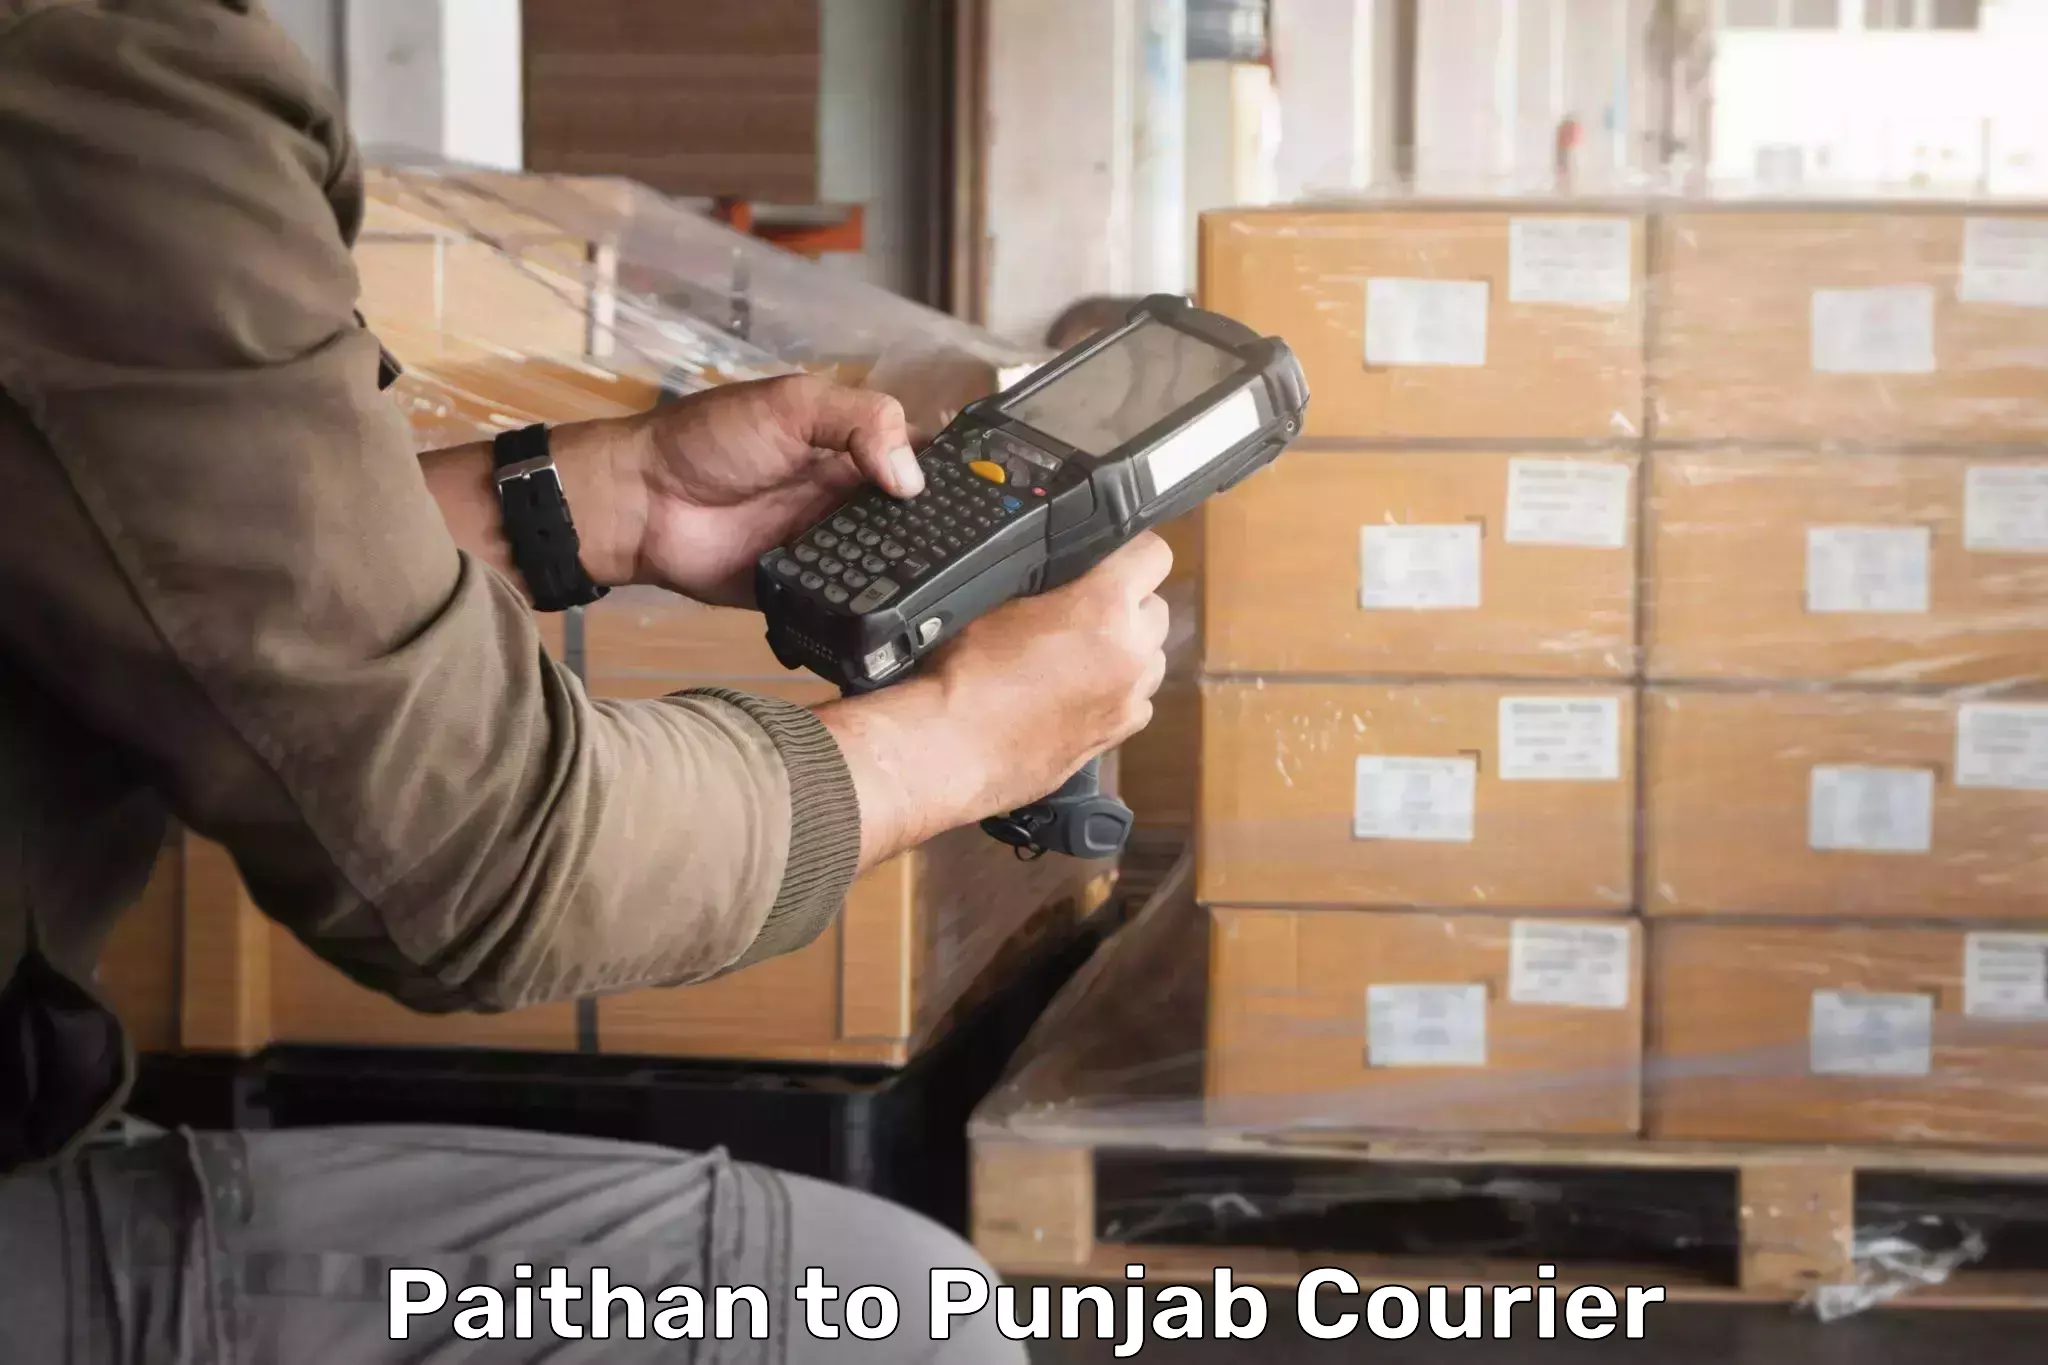 Pharmaceutical courier Paithan to Batala